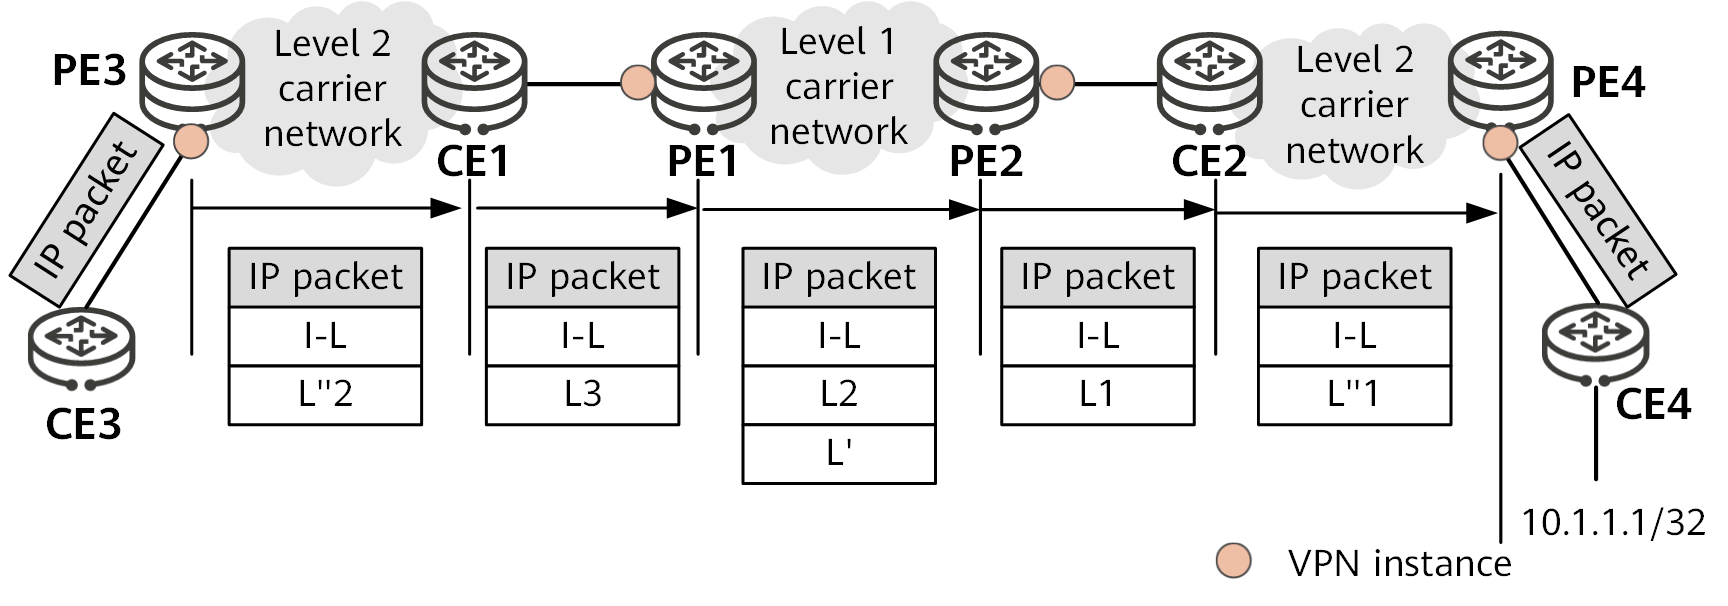 Packet forwarding based on LDP multi-instance